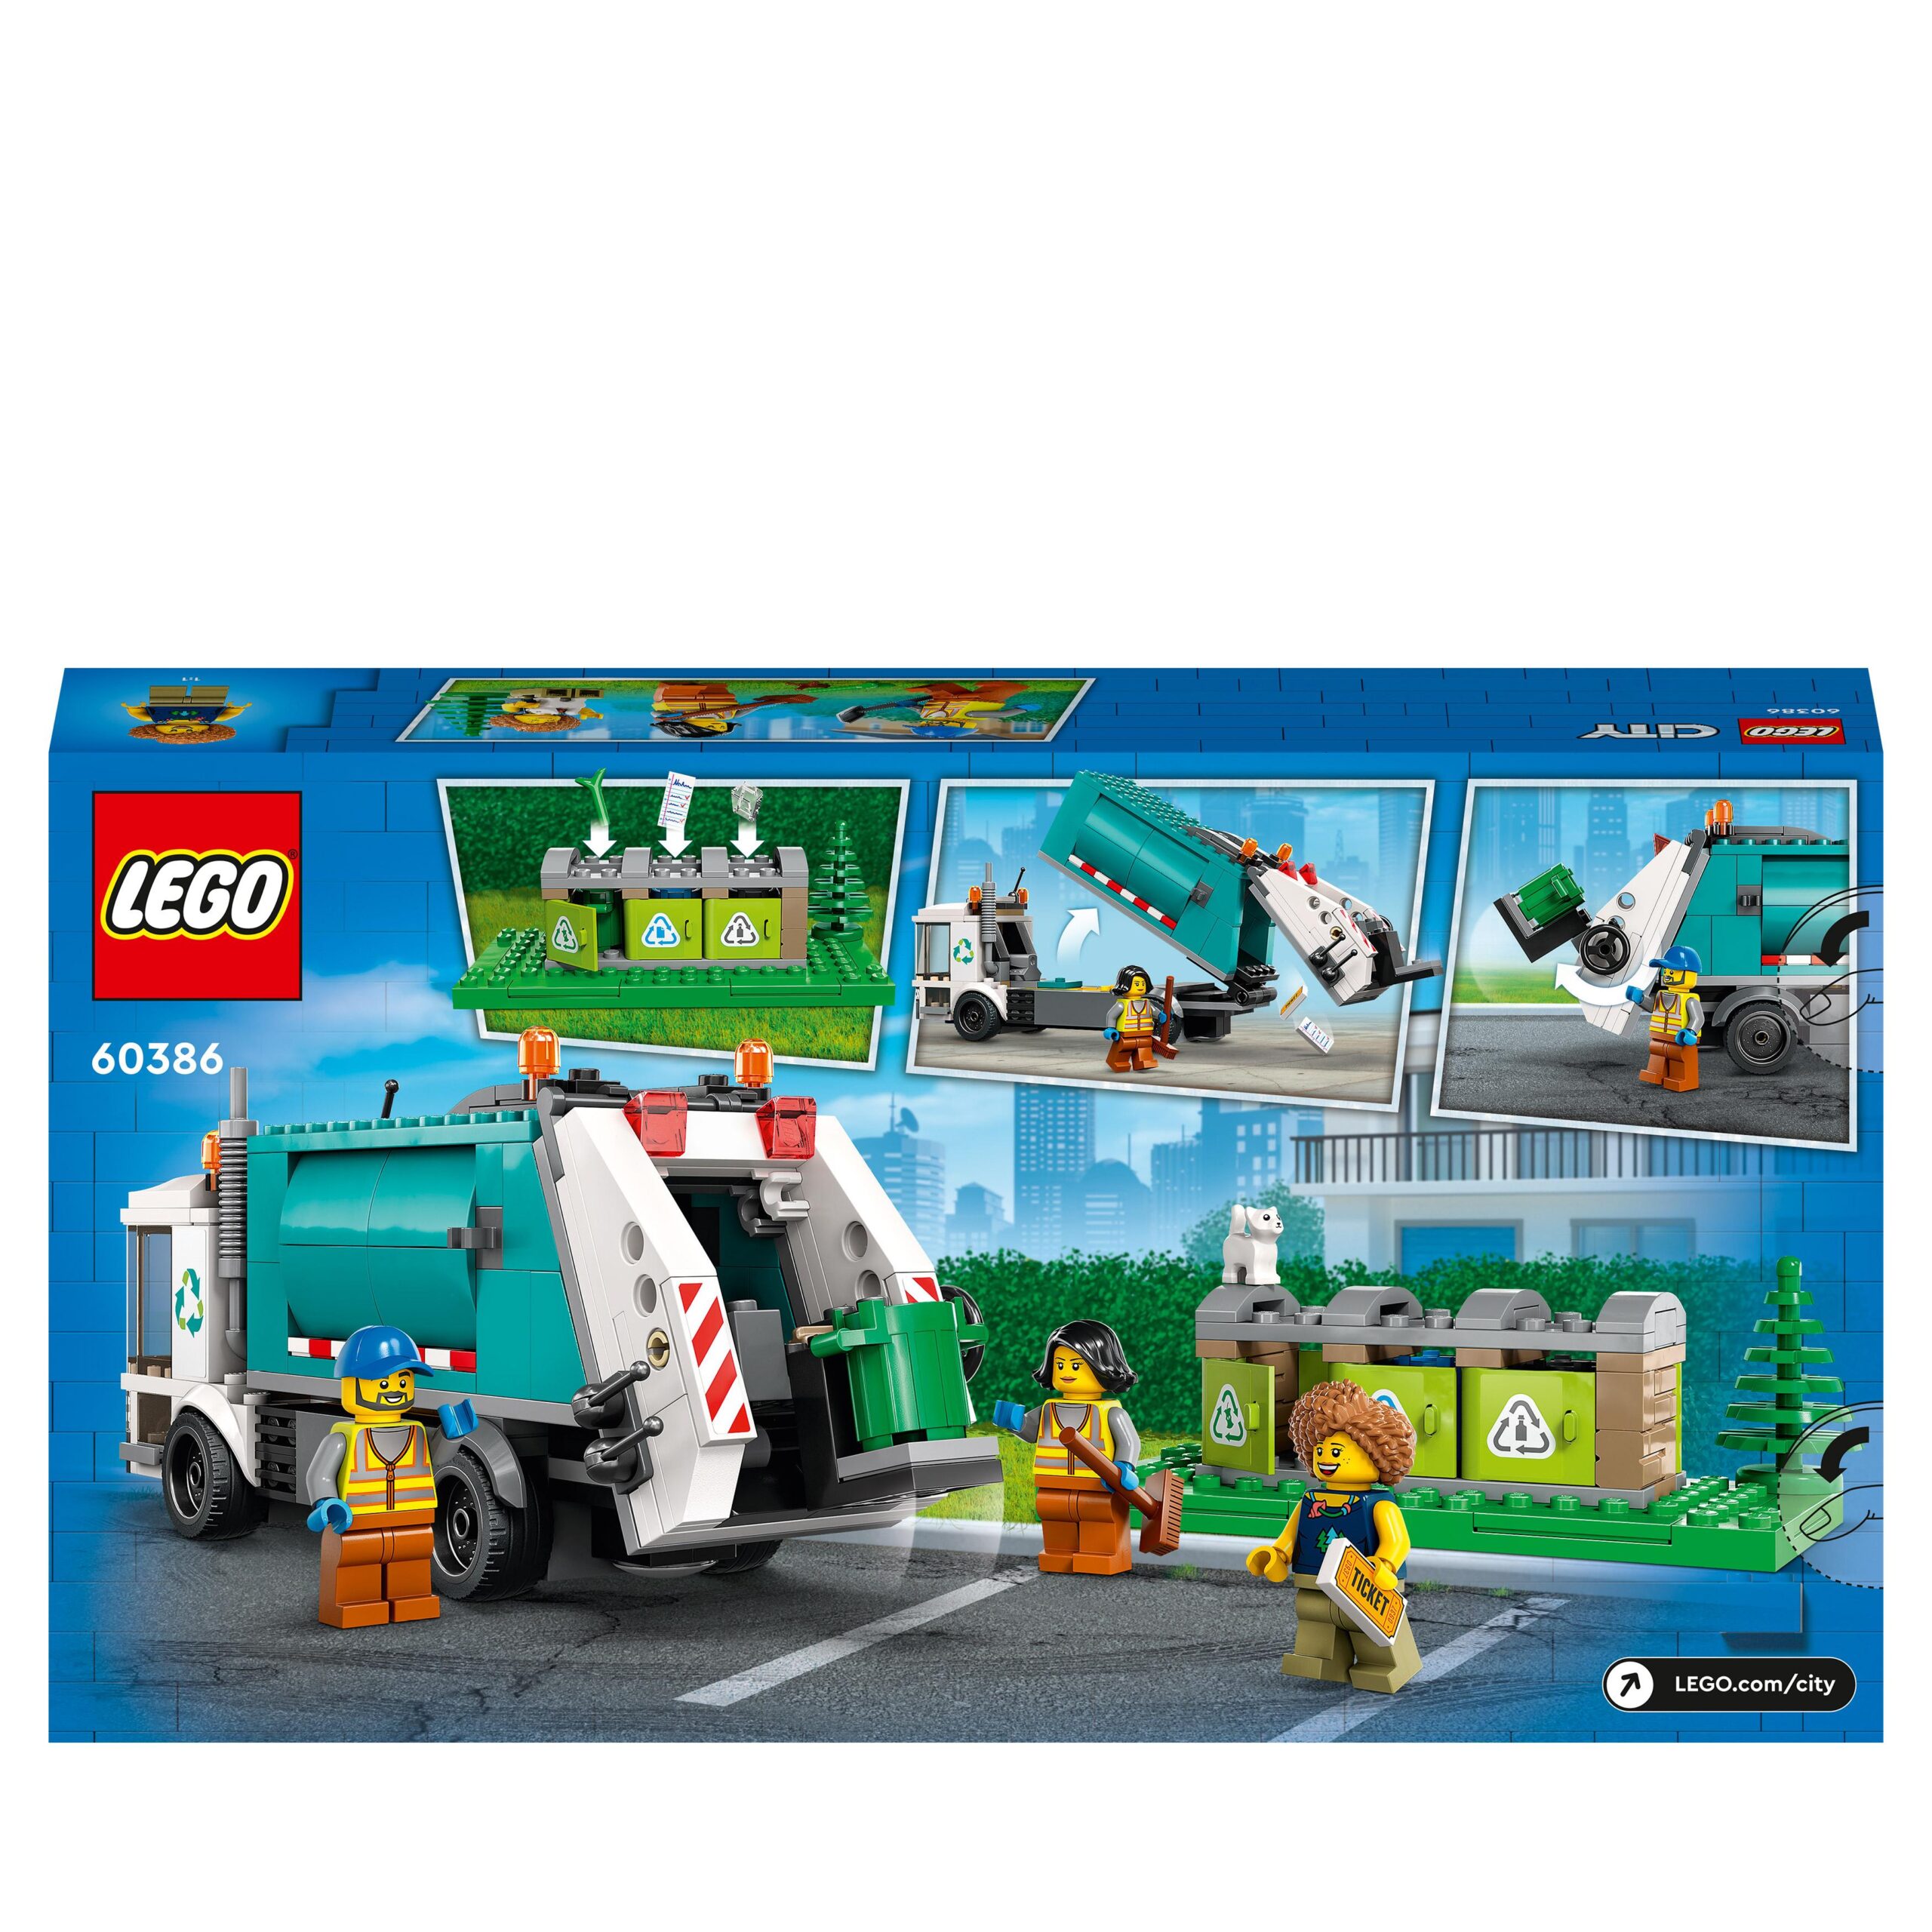 Lego city 60386 camion per il riciclaggio dei rifiuti, giocattolo con 3 bidoni raccolta differenziata, giochi educativi - LEGO CITY